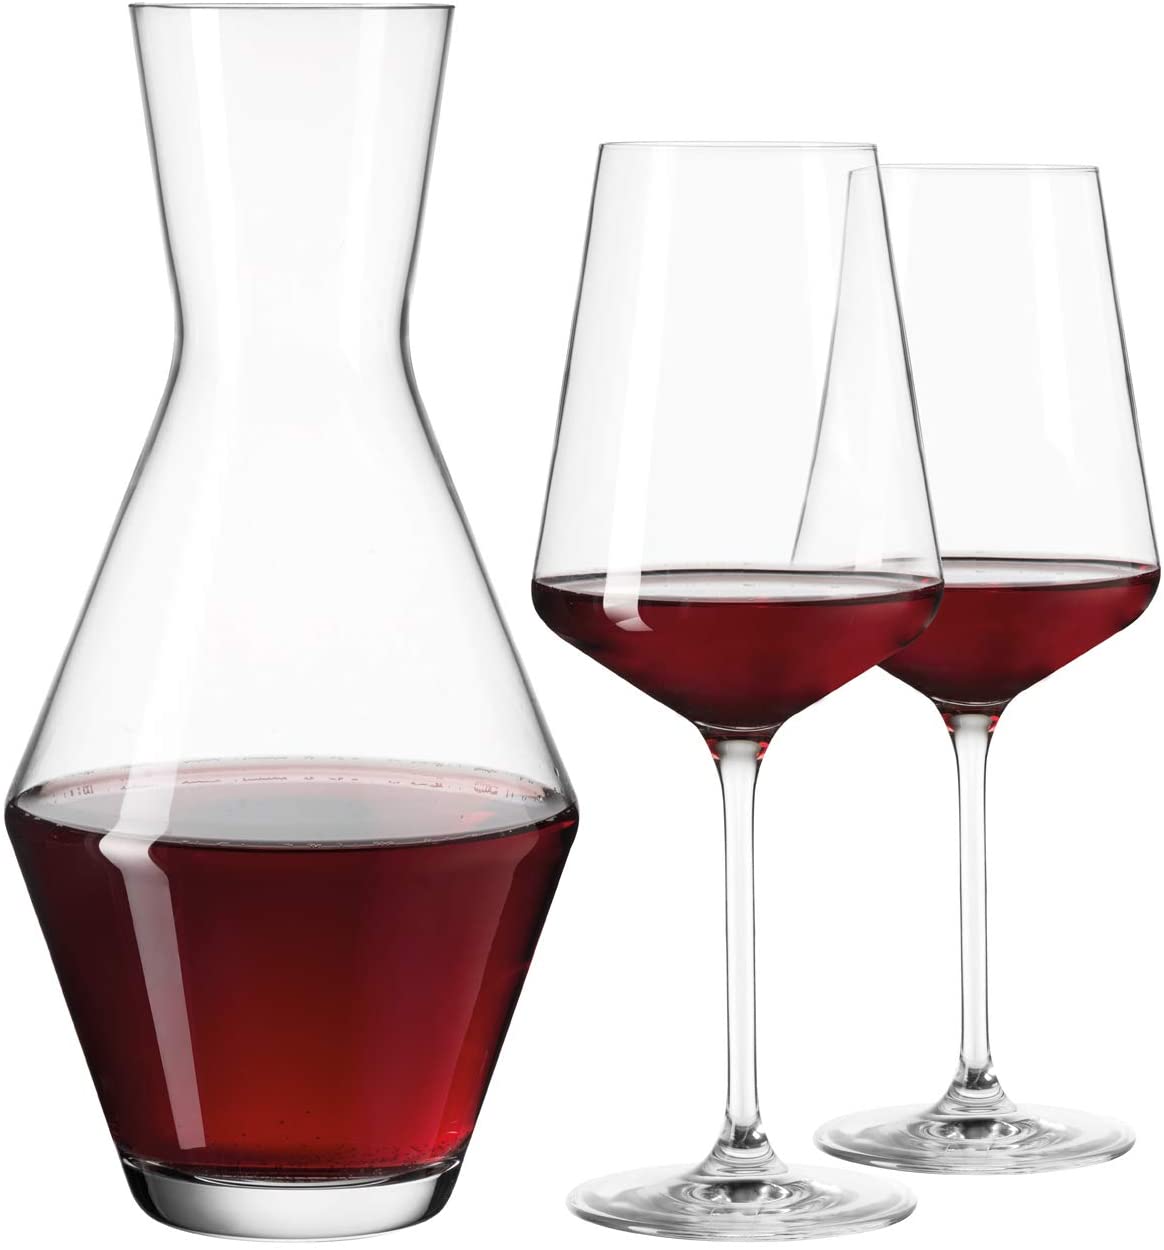 Bild zu 3-teiliges Leonardo Puccini Weißwein-Set für 11,14€ (Vergleich: 17,90€)